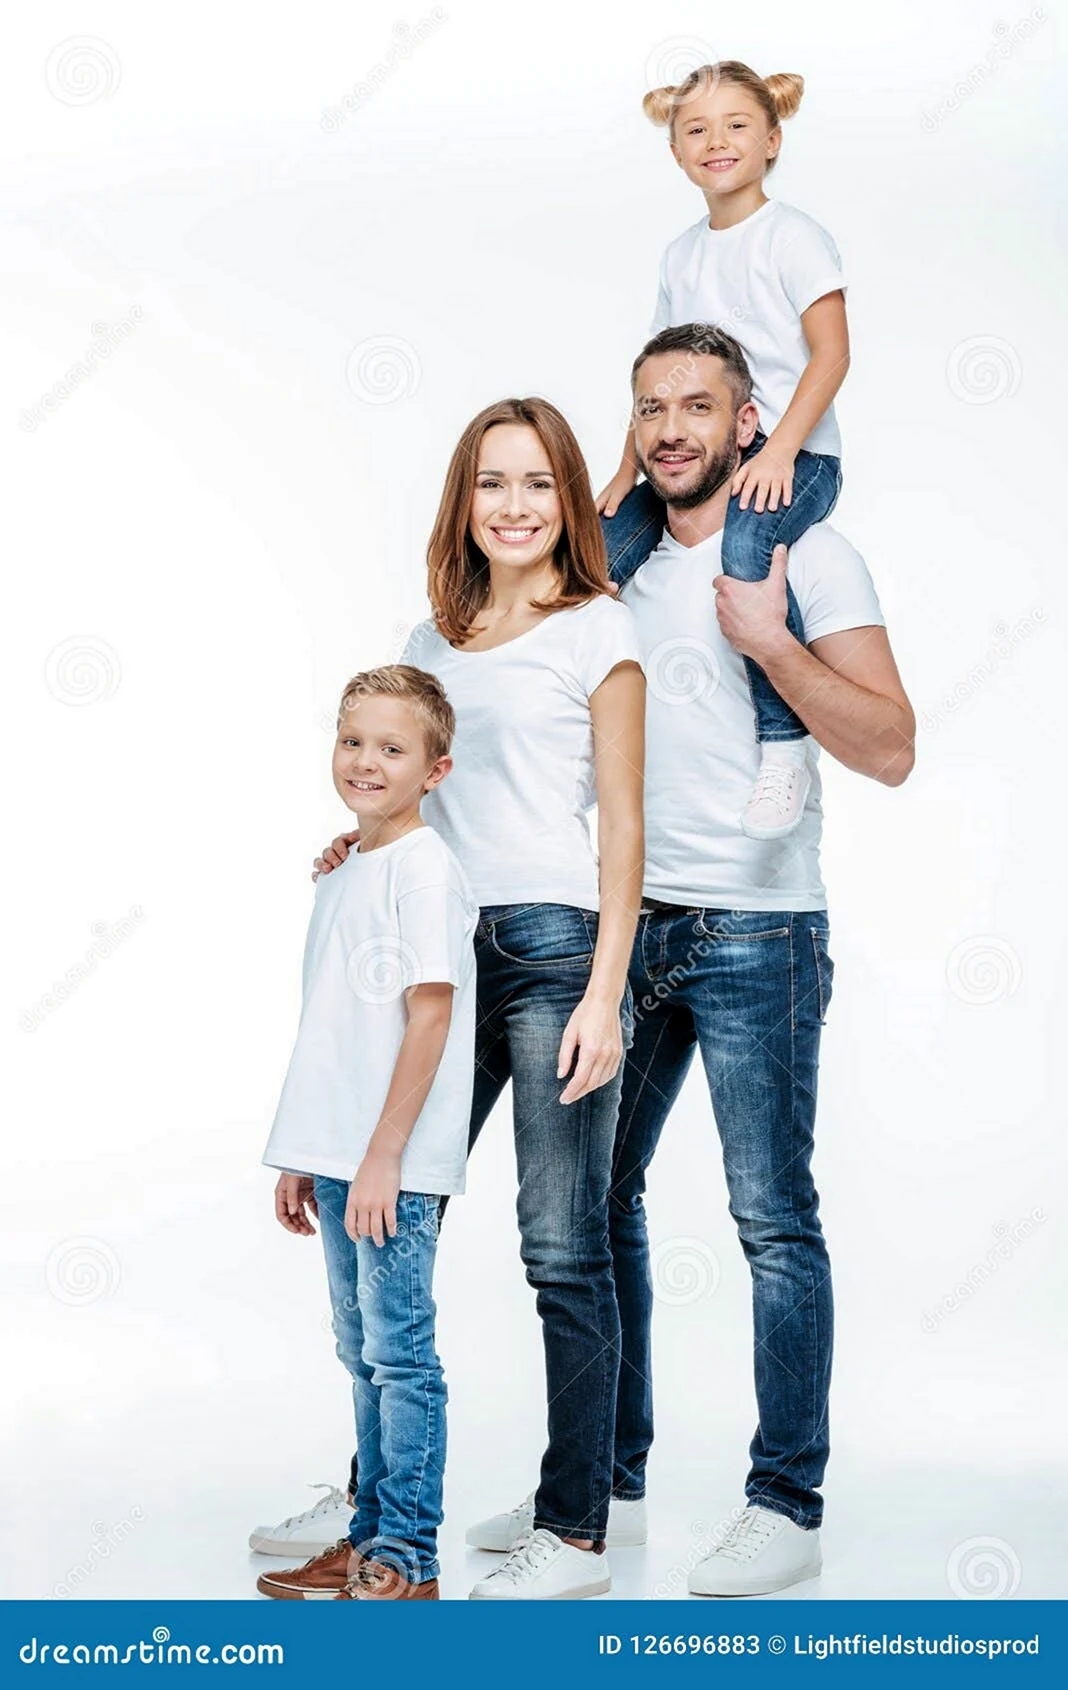 Семейная фотосессия в белых футболках